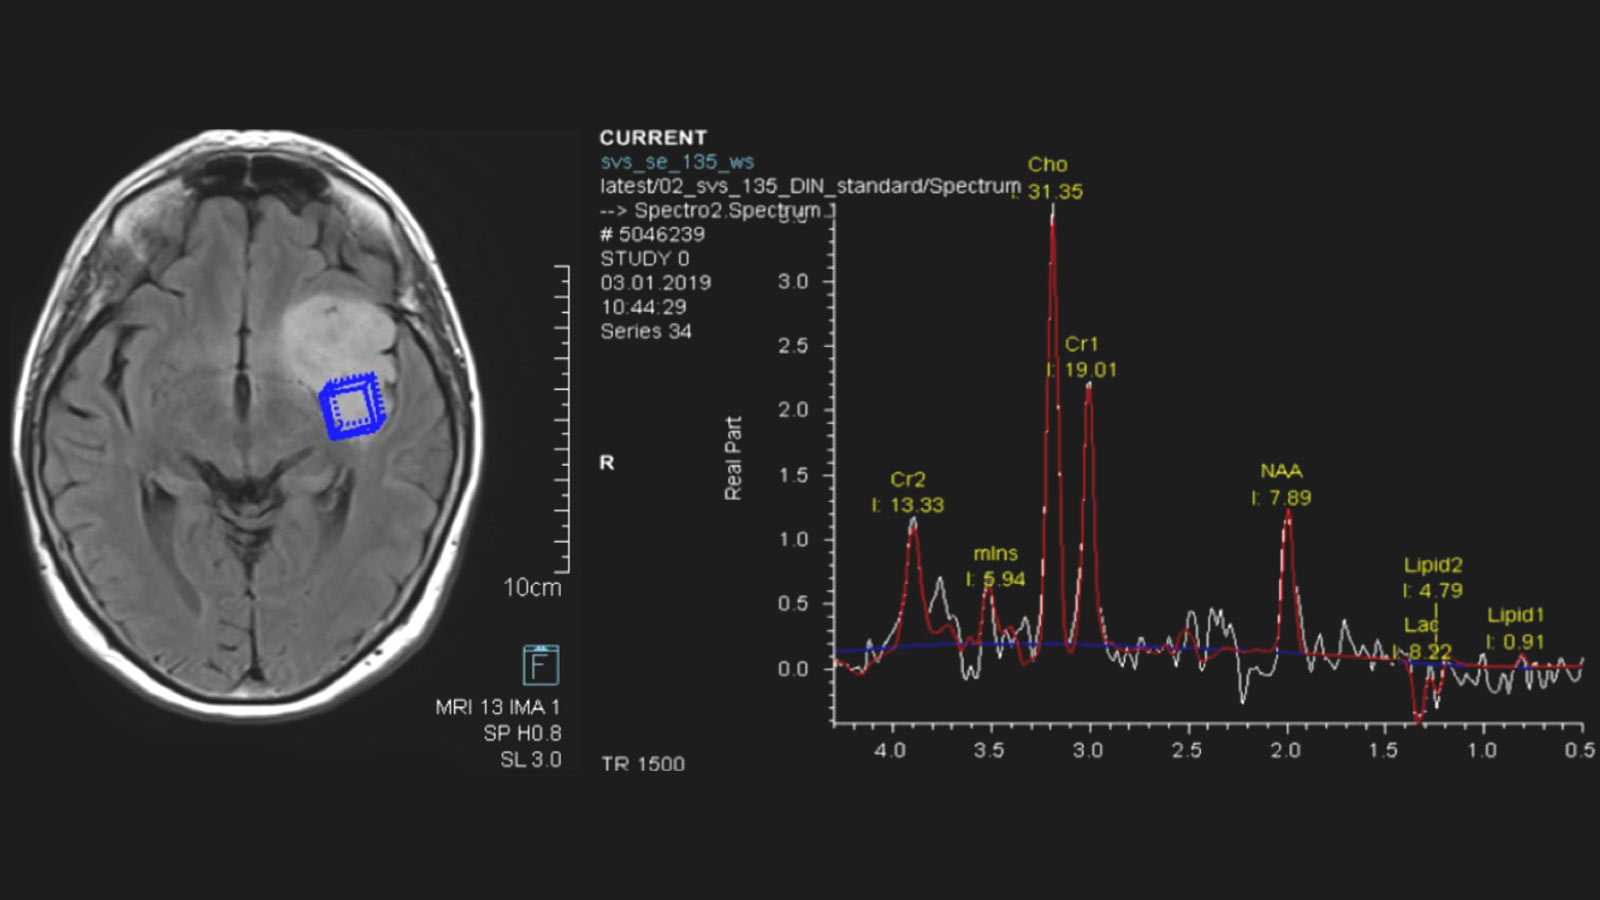 La spectroscopie RM montre à gauche une coupe de cerveau avec une tumeur claire. Une case bleue indique une concentration élevée de métabolites. A droite, diagramme de courbes avec les valeurs de la mesure des métabolites. 